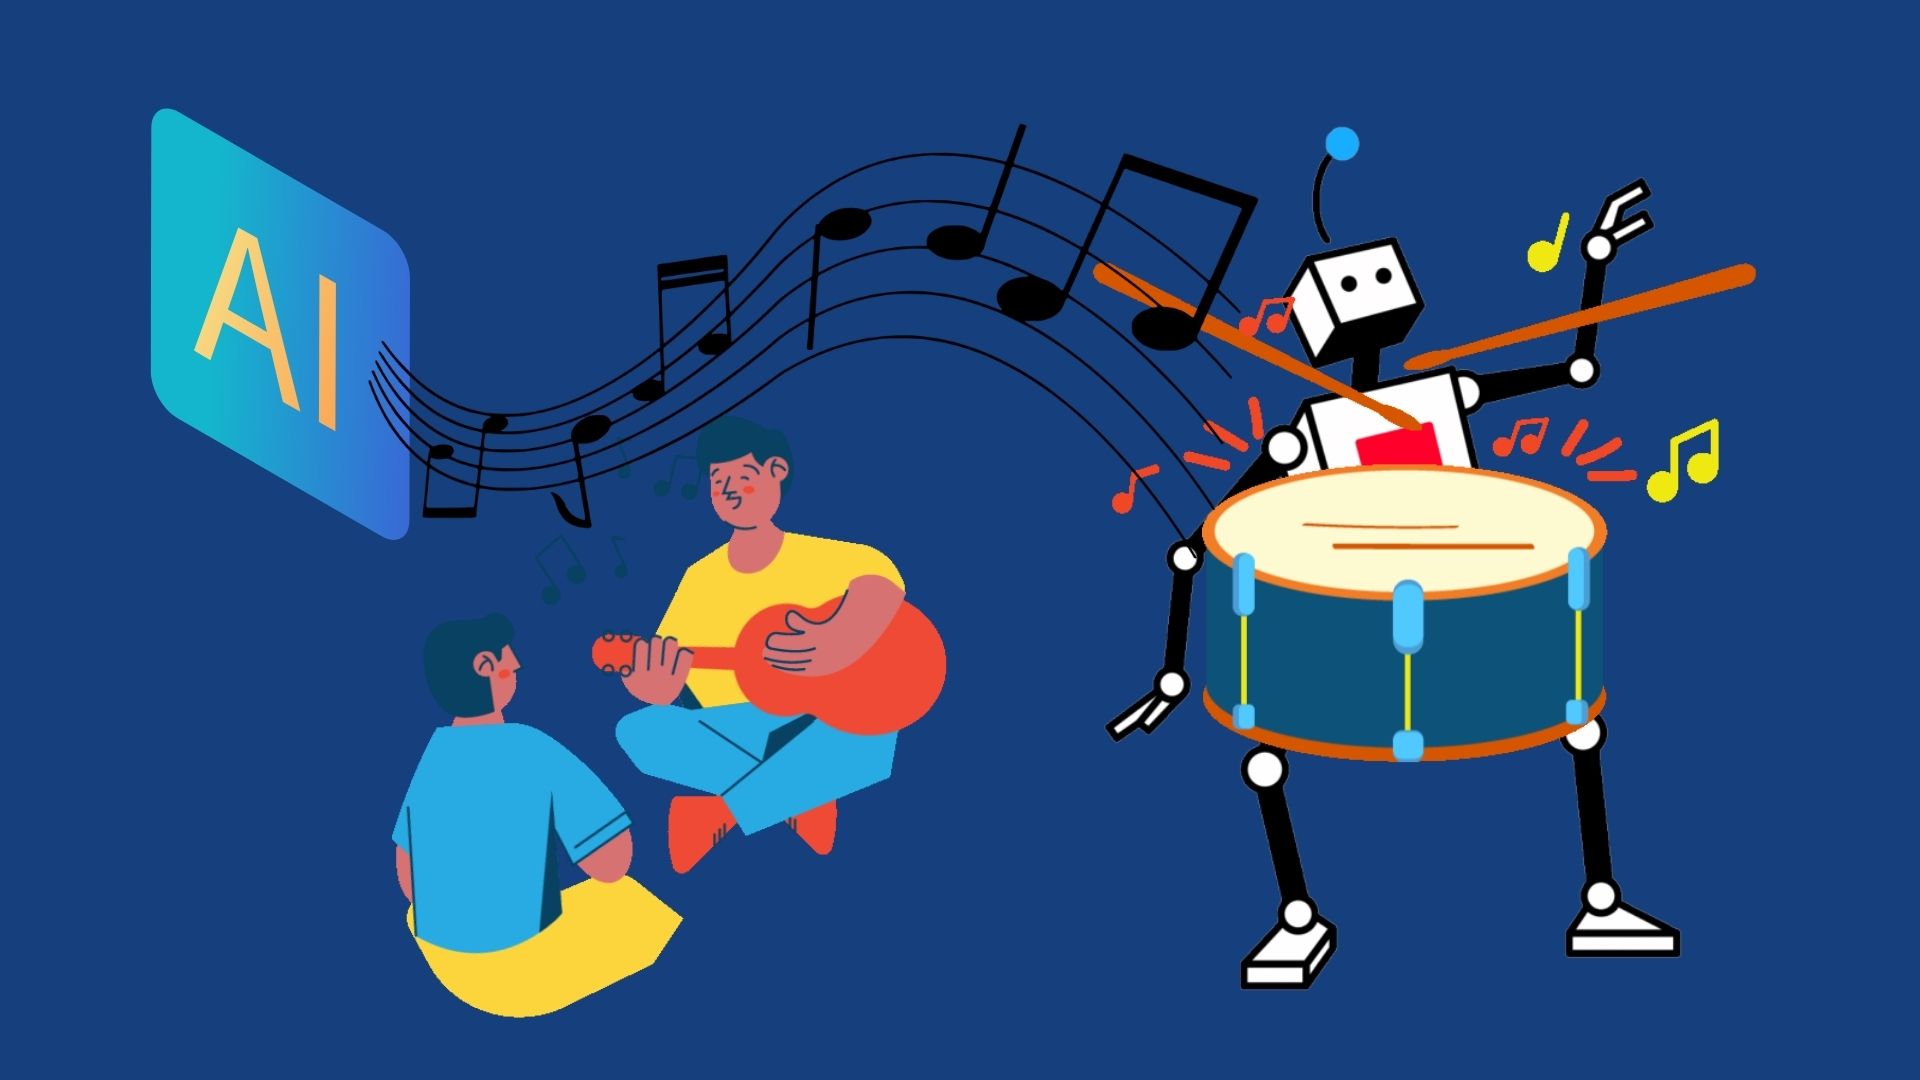 แยกออกไหมนี่ฝีมือคนหรือ AI ความว้าวทางดนตรีครั้งใหม่จาก ‘MusicLM’ AI ใช้แต่งเพลงจาก Google